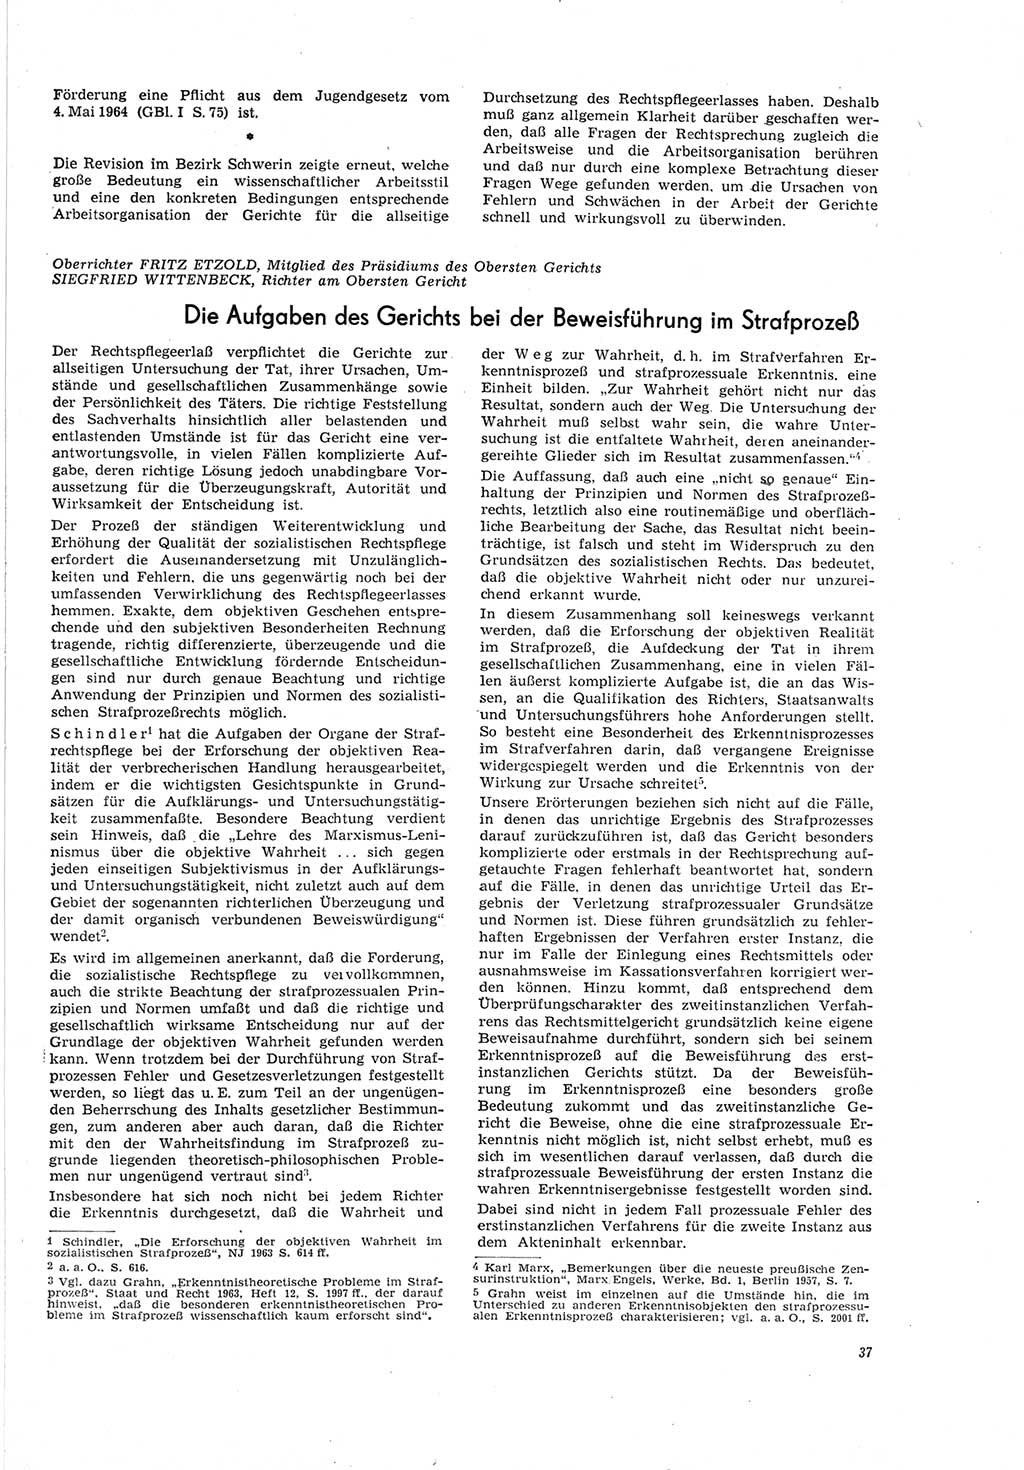 Neue Justiz (NJ), Zeitschrift für Recht und Rechtswissenschaft [Deutsche Demokratische Republik (DDR)], 19. Jahrgang 1965, Seite 37 (NJ DDR 1965, S. 37)